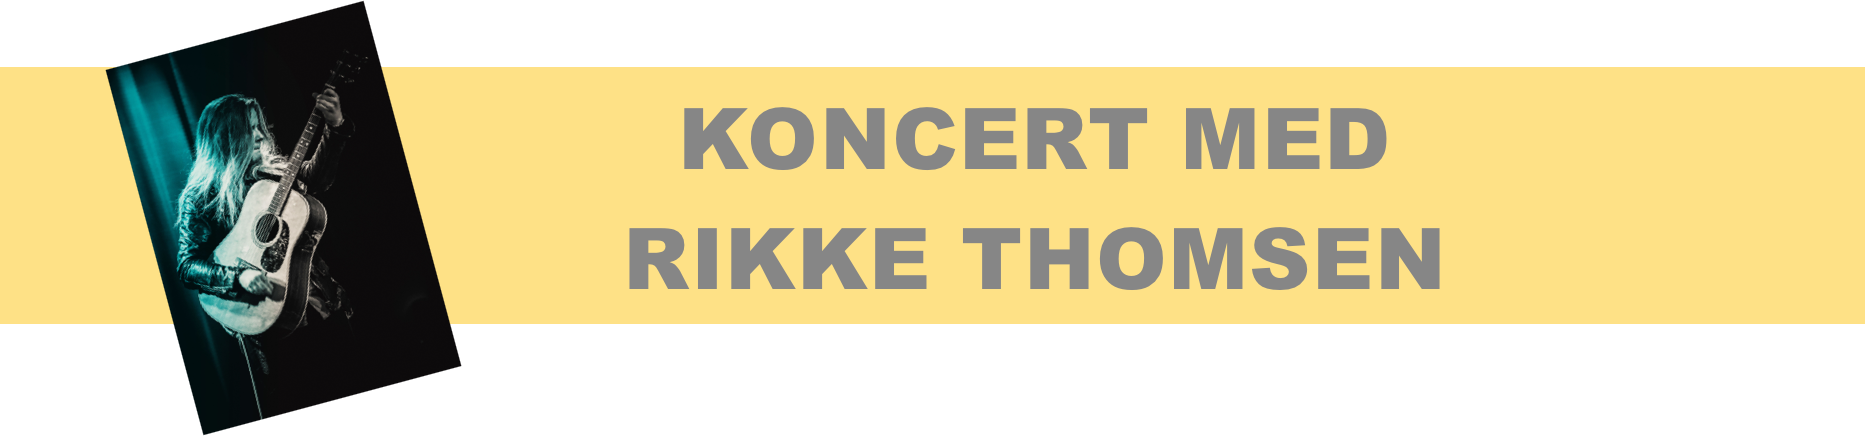 Koncert med Rikke Thomsen